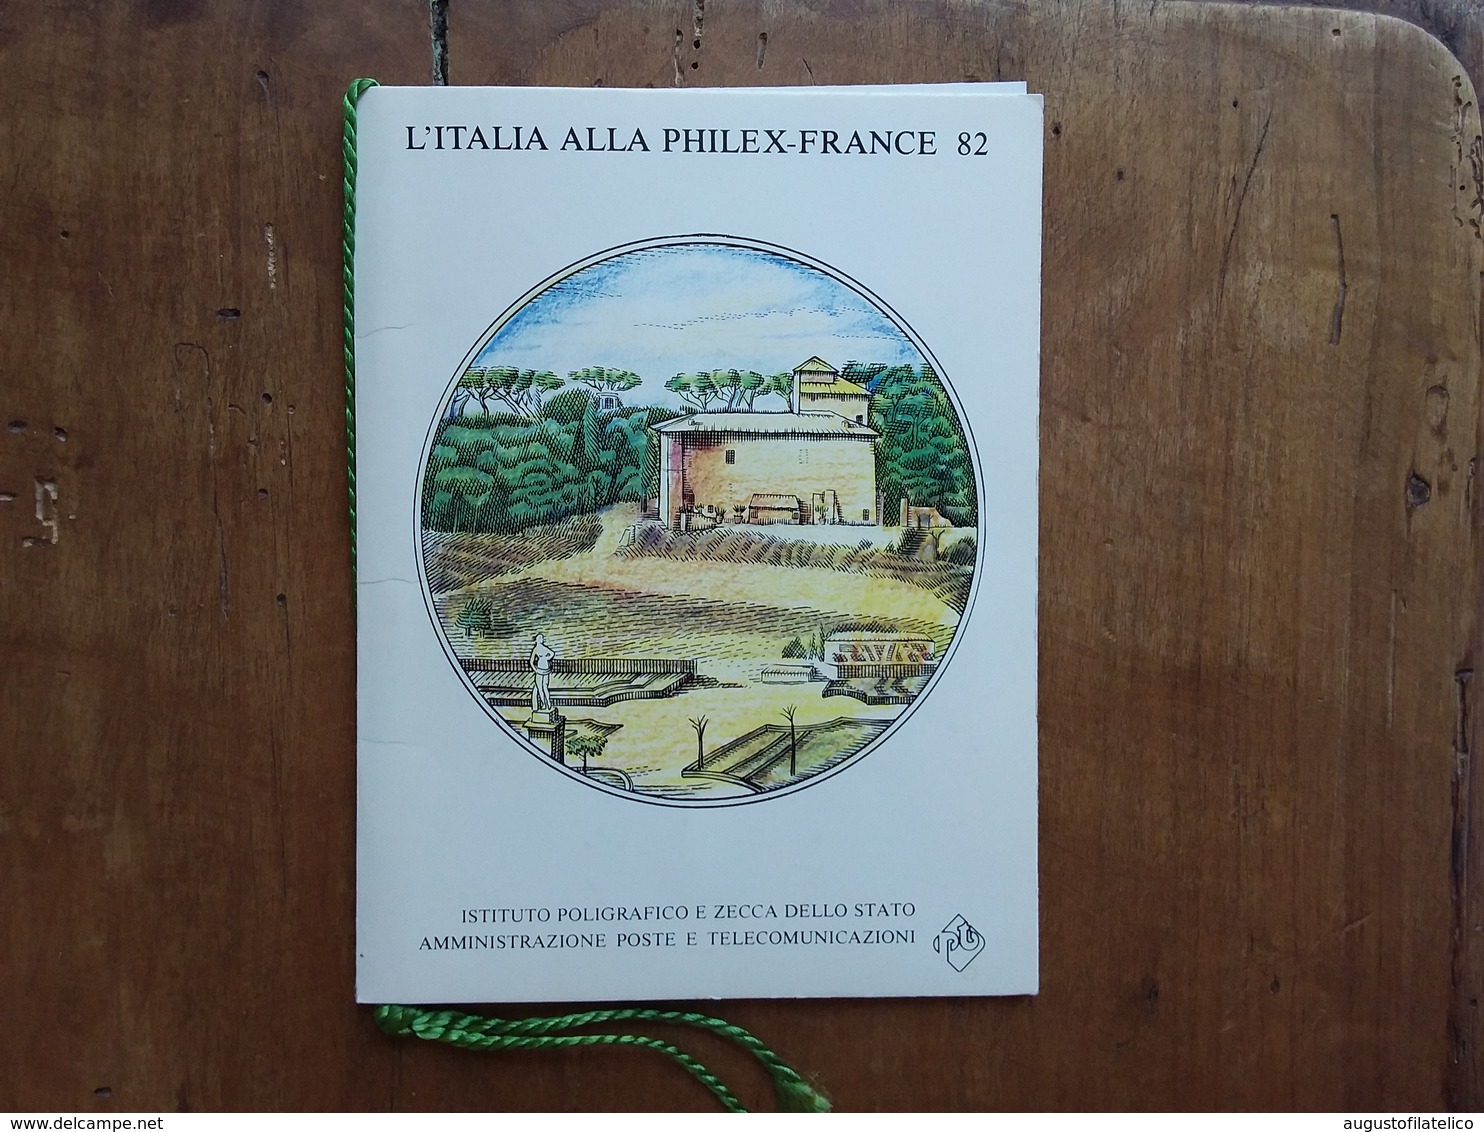 REPUBBLICA - Cartoncino Del Poligrafico Per Philex - France '82 Con Serie + Foglietto Ricordo + Spese Postali - FDC